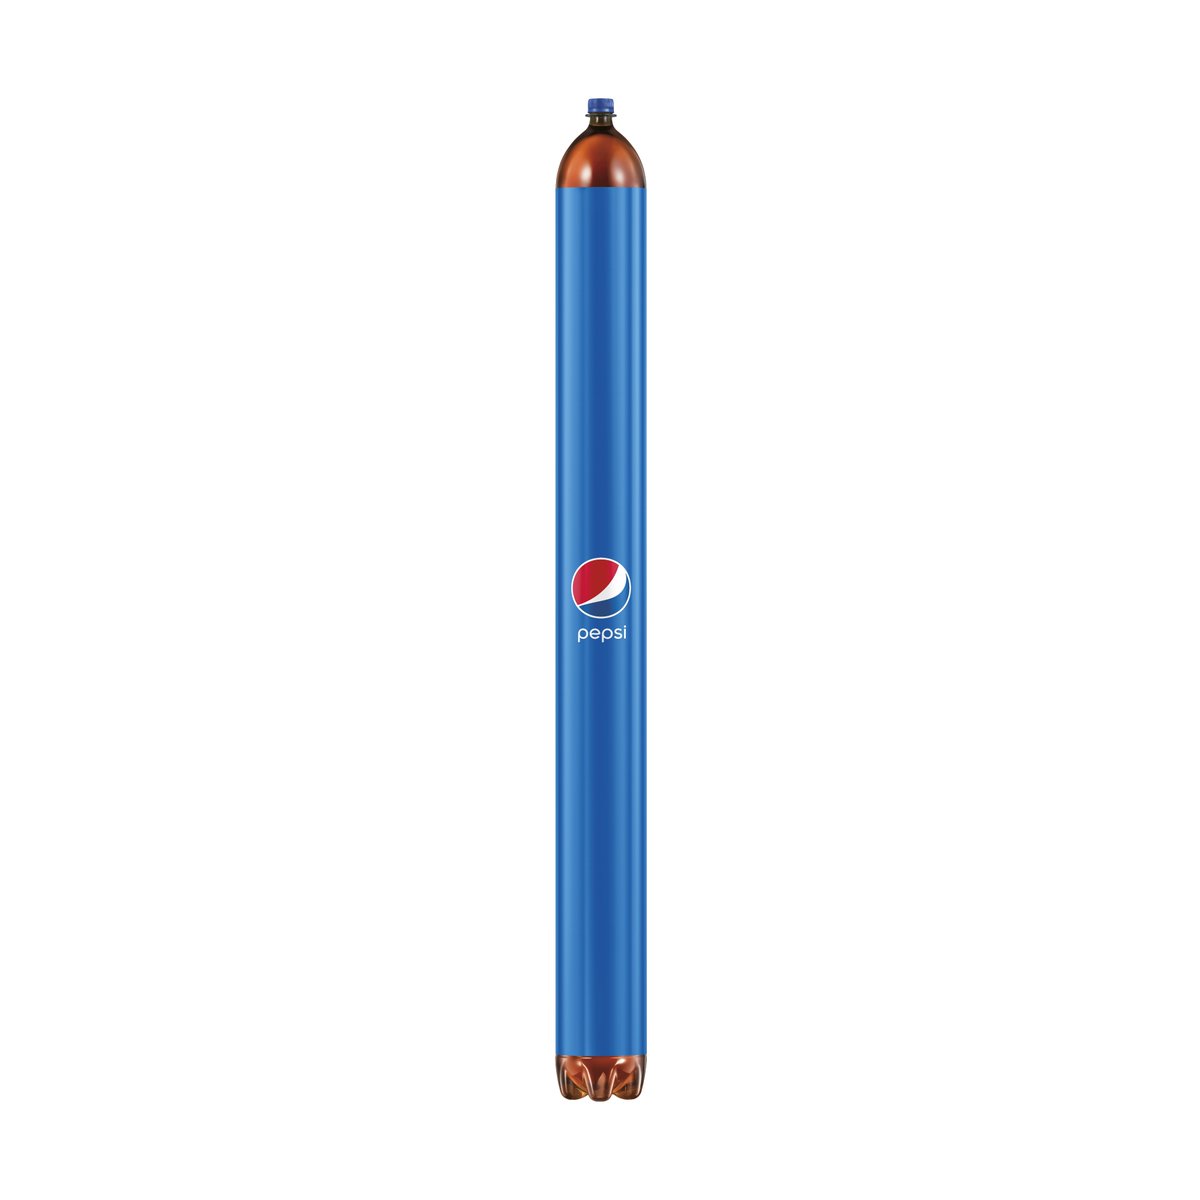 New artwork:

Long Pepsi, 2024